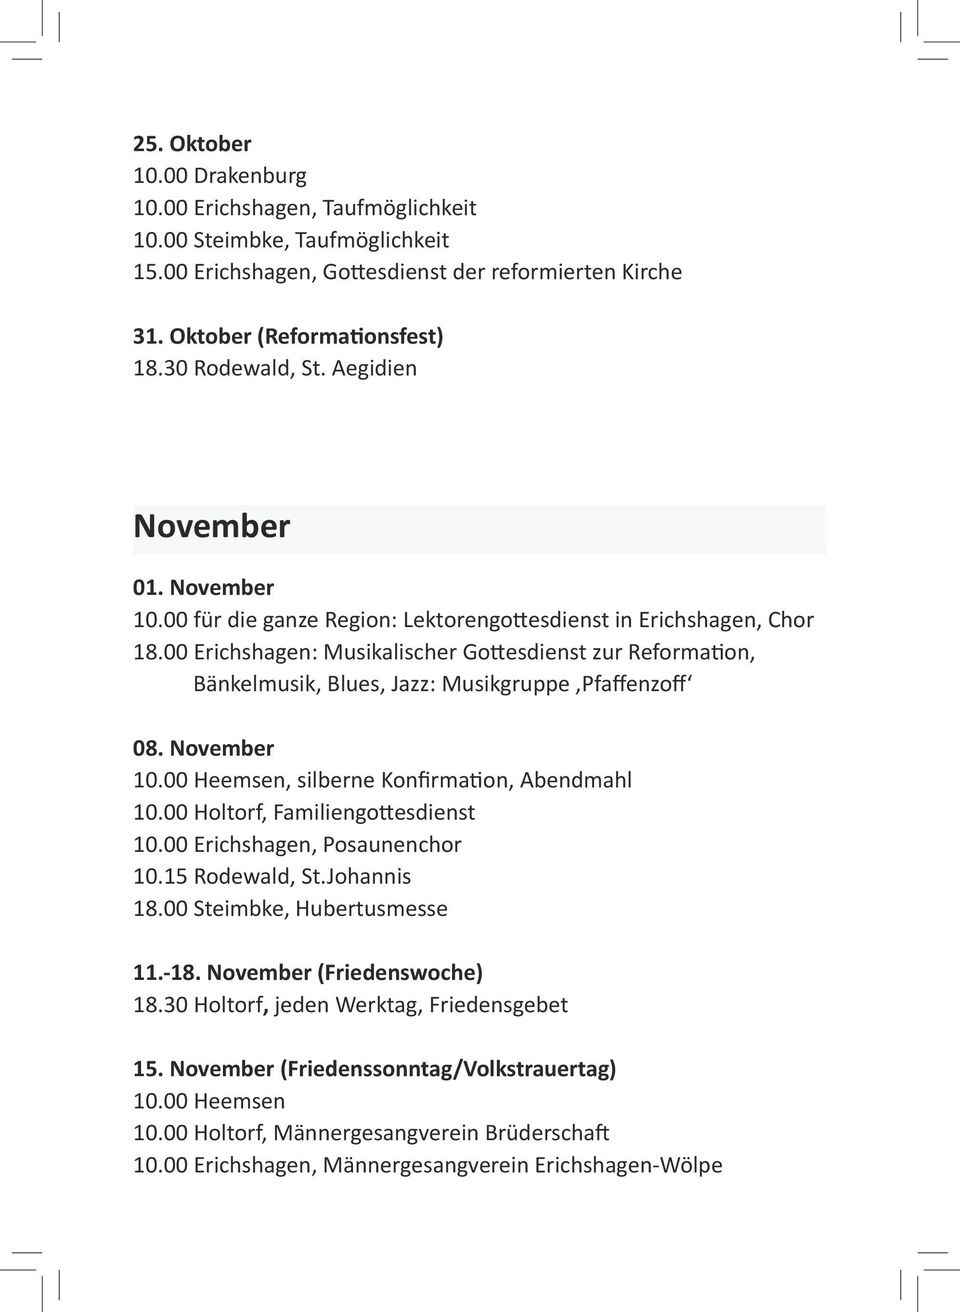 00 Erichshagen: Musikalischer Gottesdienst zur Reformation, Bänkelmusik, Blues, Jazz: Musikgruppe Pfaffenzoff 08. November 10.00 Heemsen, silberne Konfirmation, Abendmahl 10.